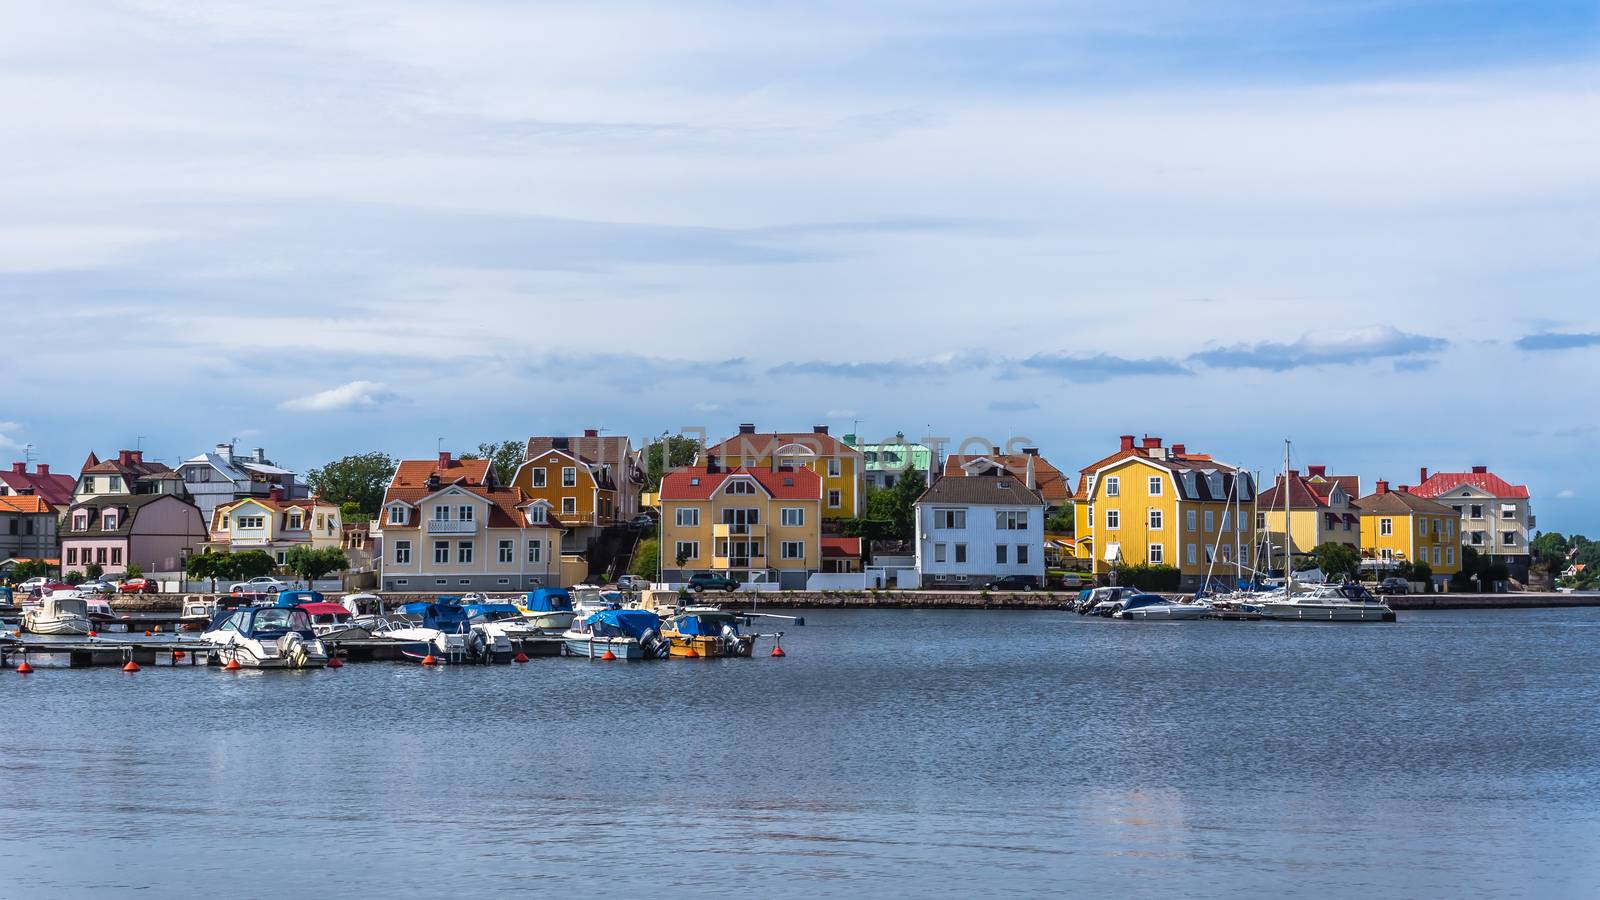 Cityscape of Karlskrona by pawel_szczepanski